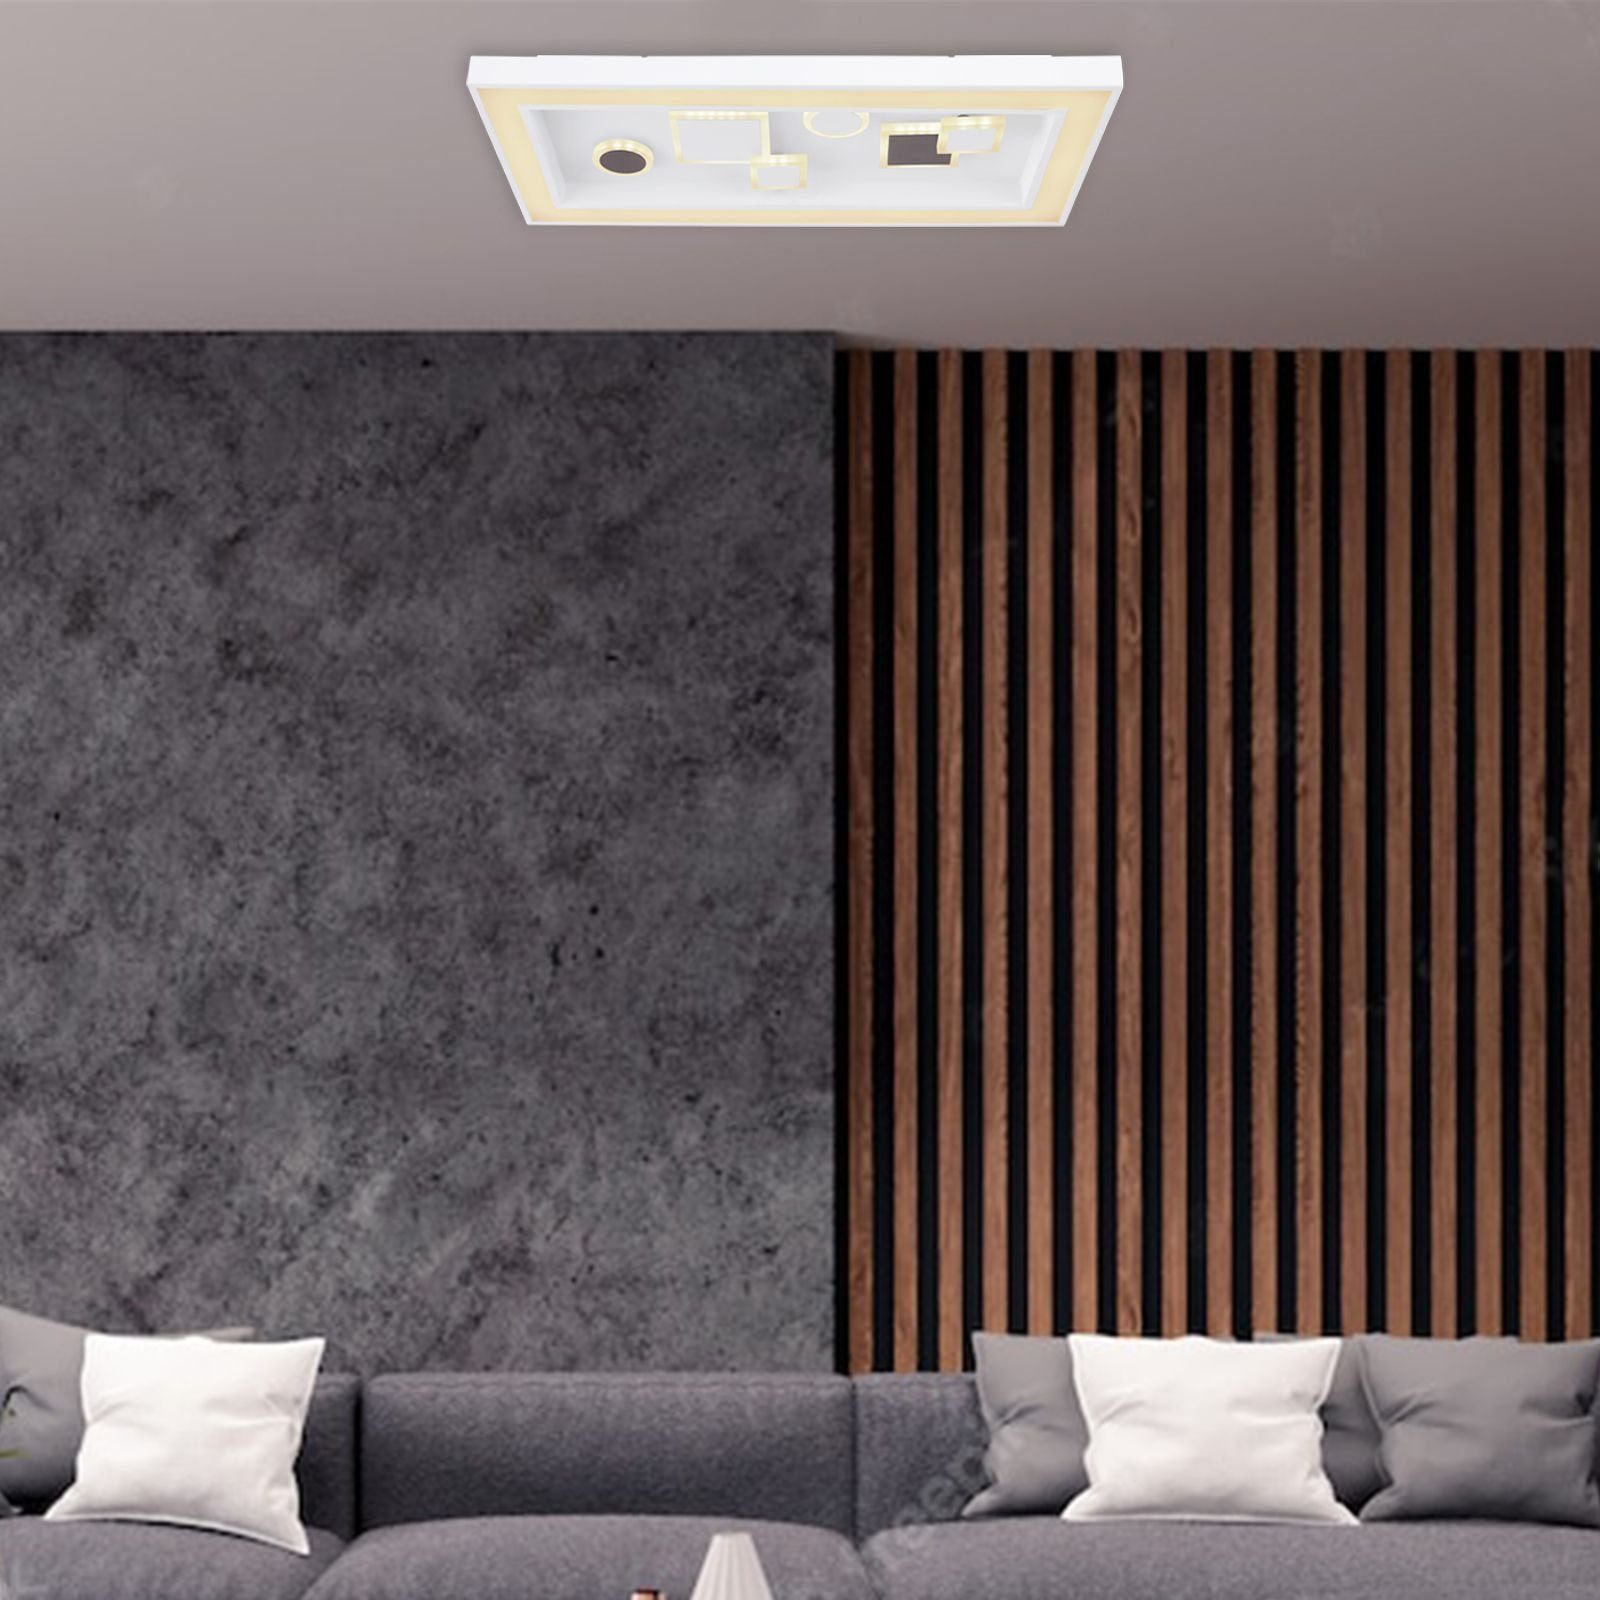 GLOBO dimmbar Globo Deckenlampe Deckenleuchte Fernbedienung Wohnzimmer Deckenleuchte LED